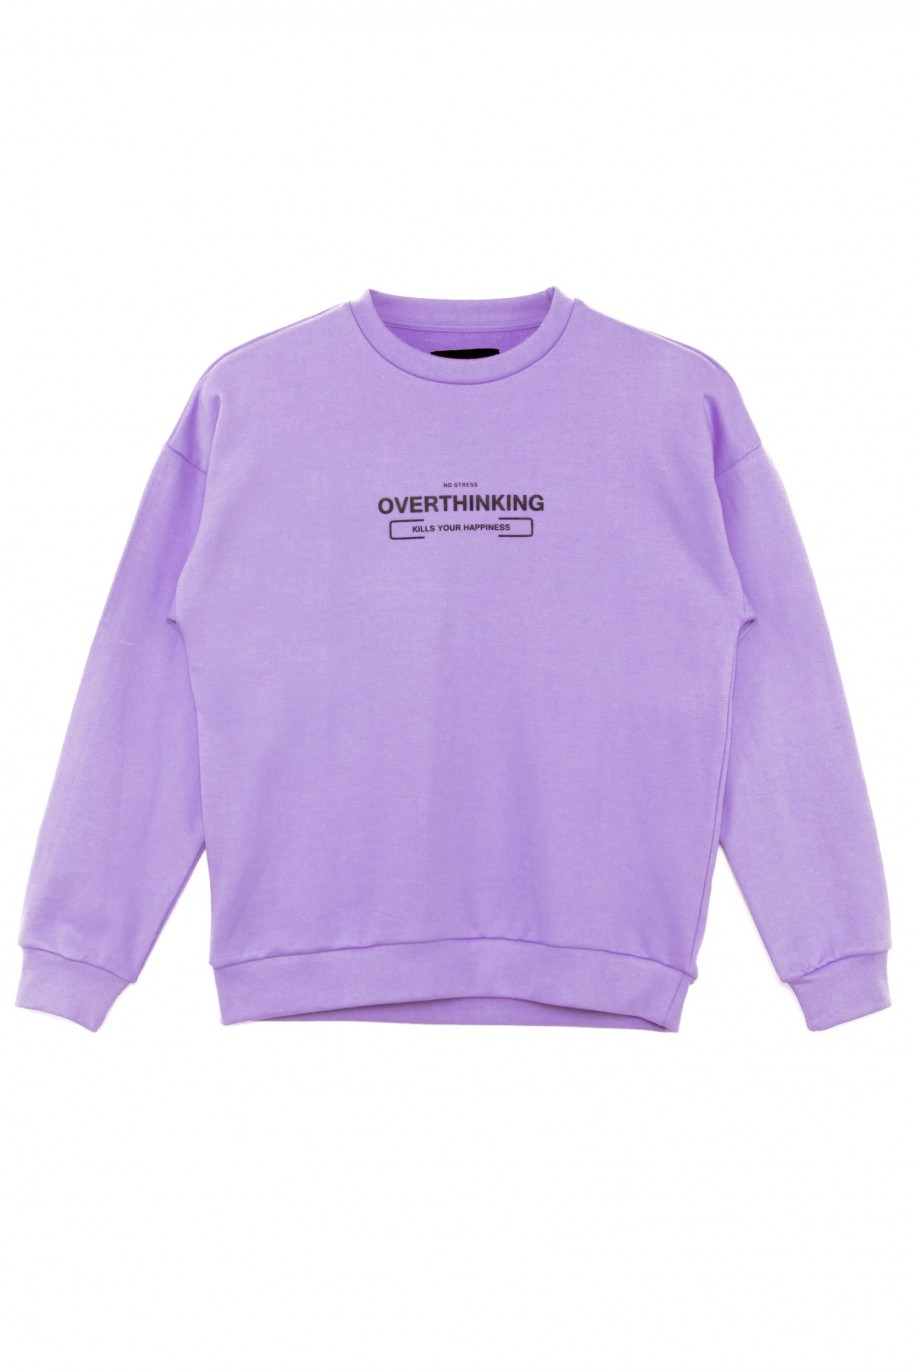 Fioletowa bluza dla chłopaka OVERTHINKING - 30685